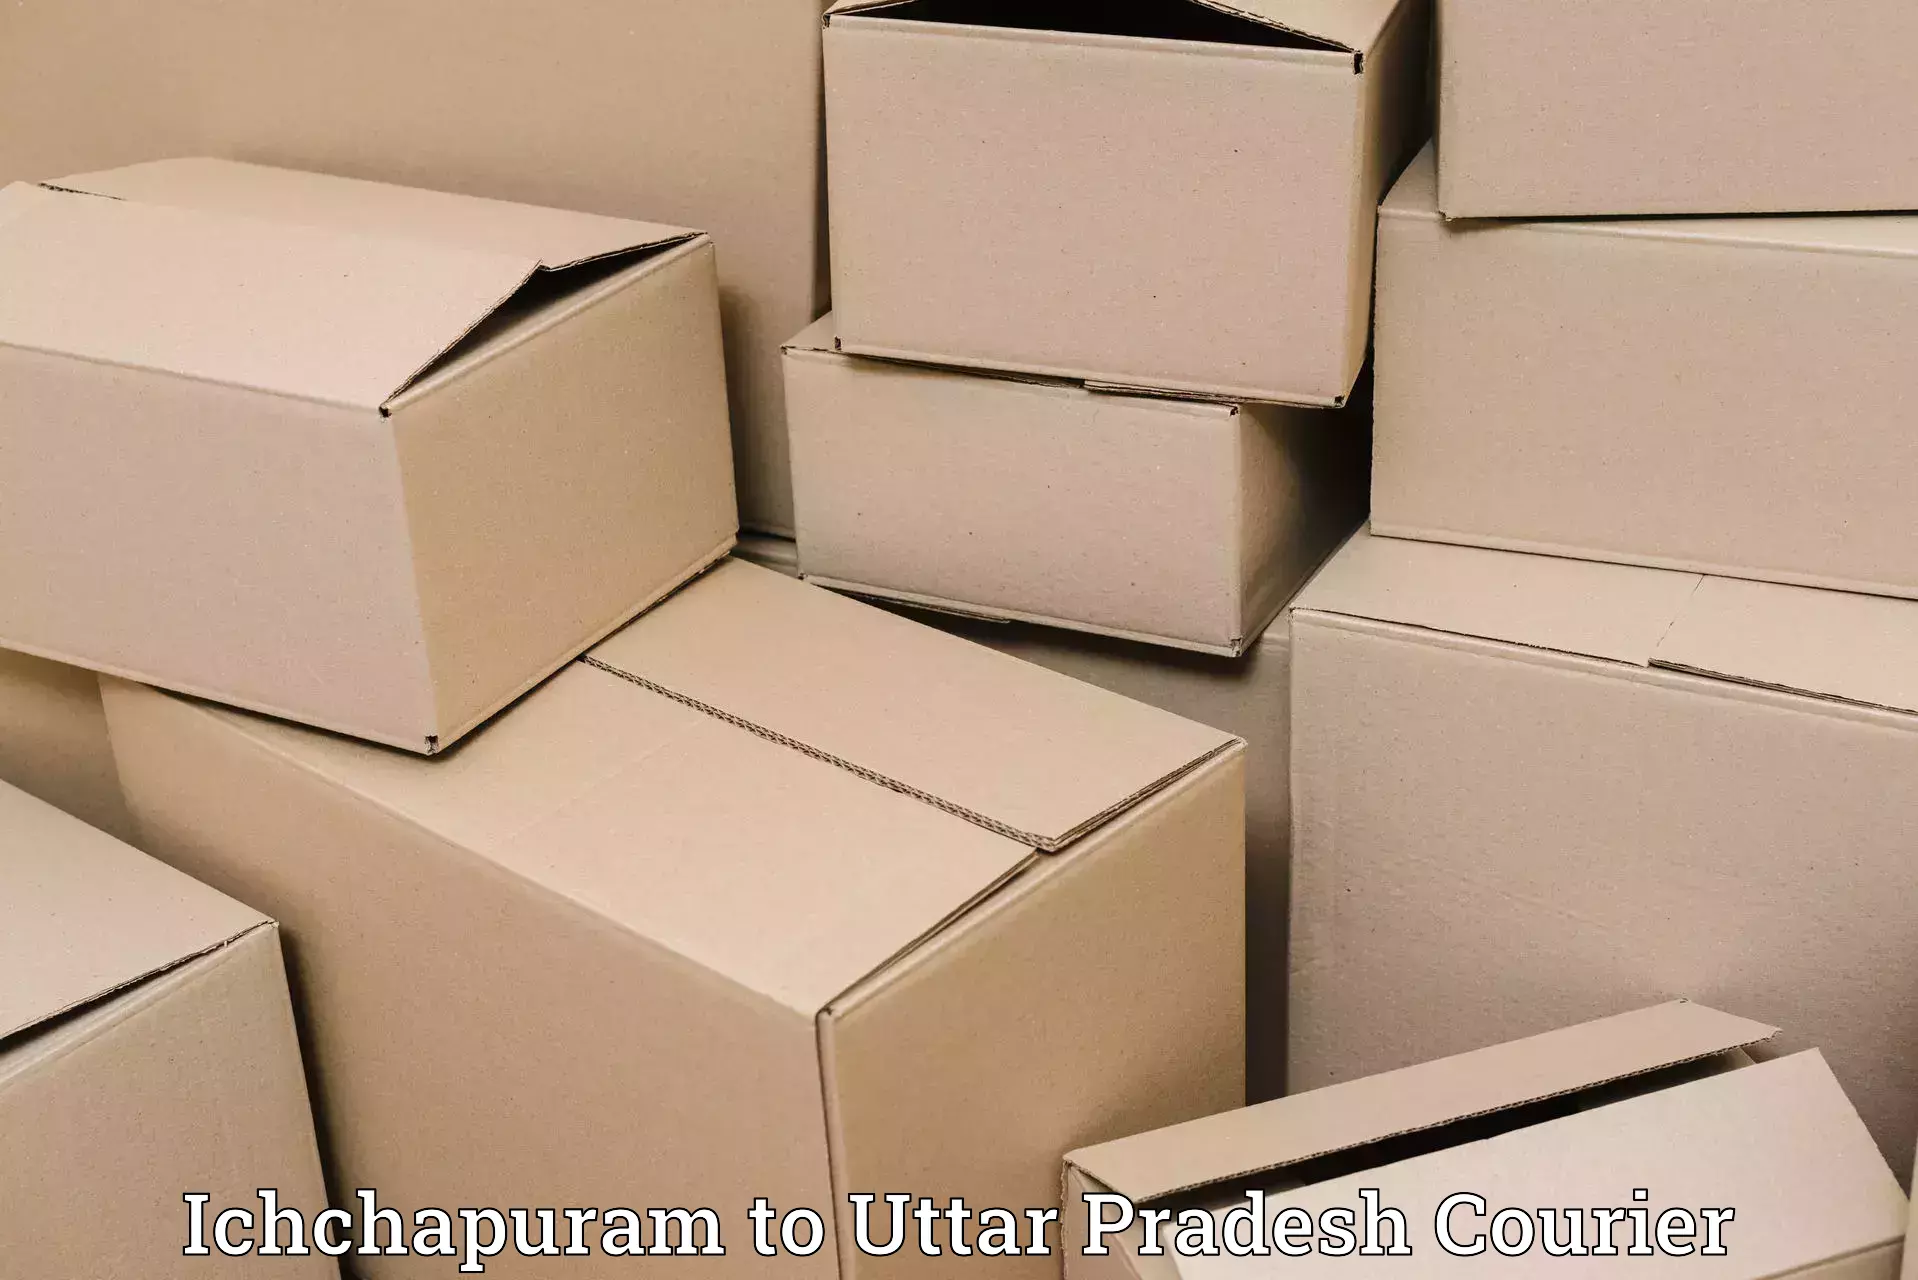 High-speed delivery Ichchapuram to Sant Ravidas Nagar